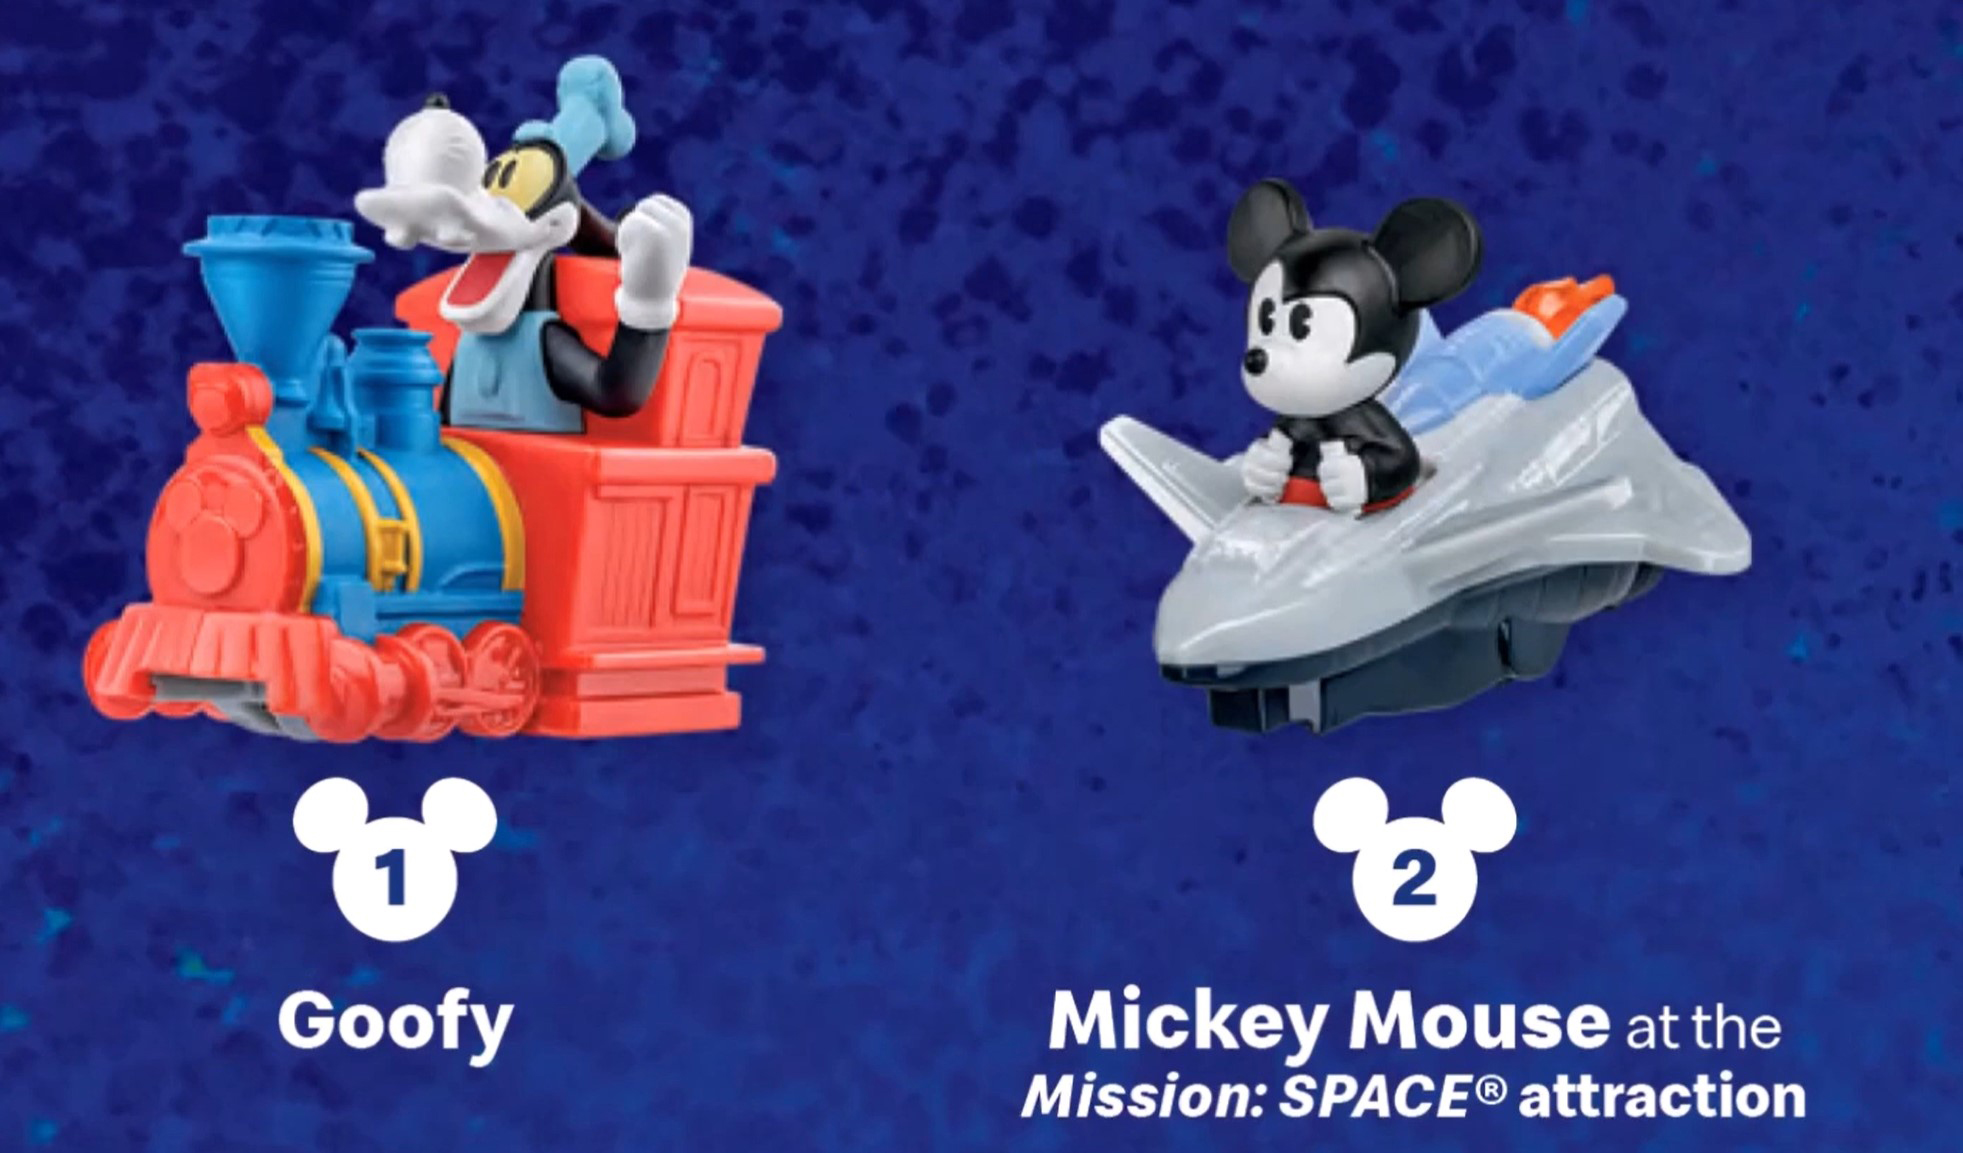 2020 McDONALD/'S Disney Mickey Minnie/'s Runaway Railway HAPPY MEAL TOY #1